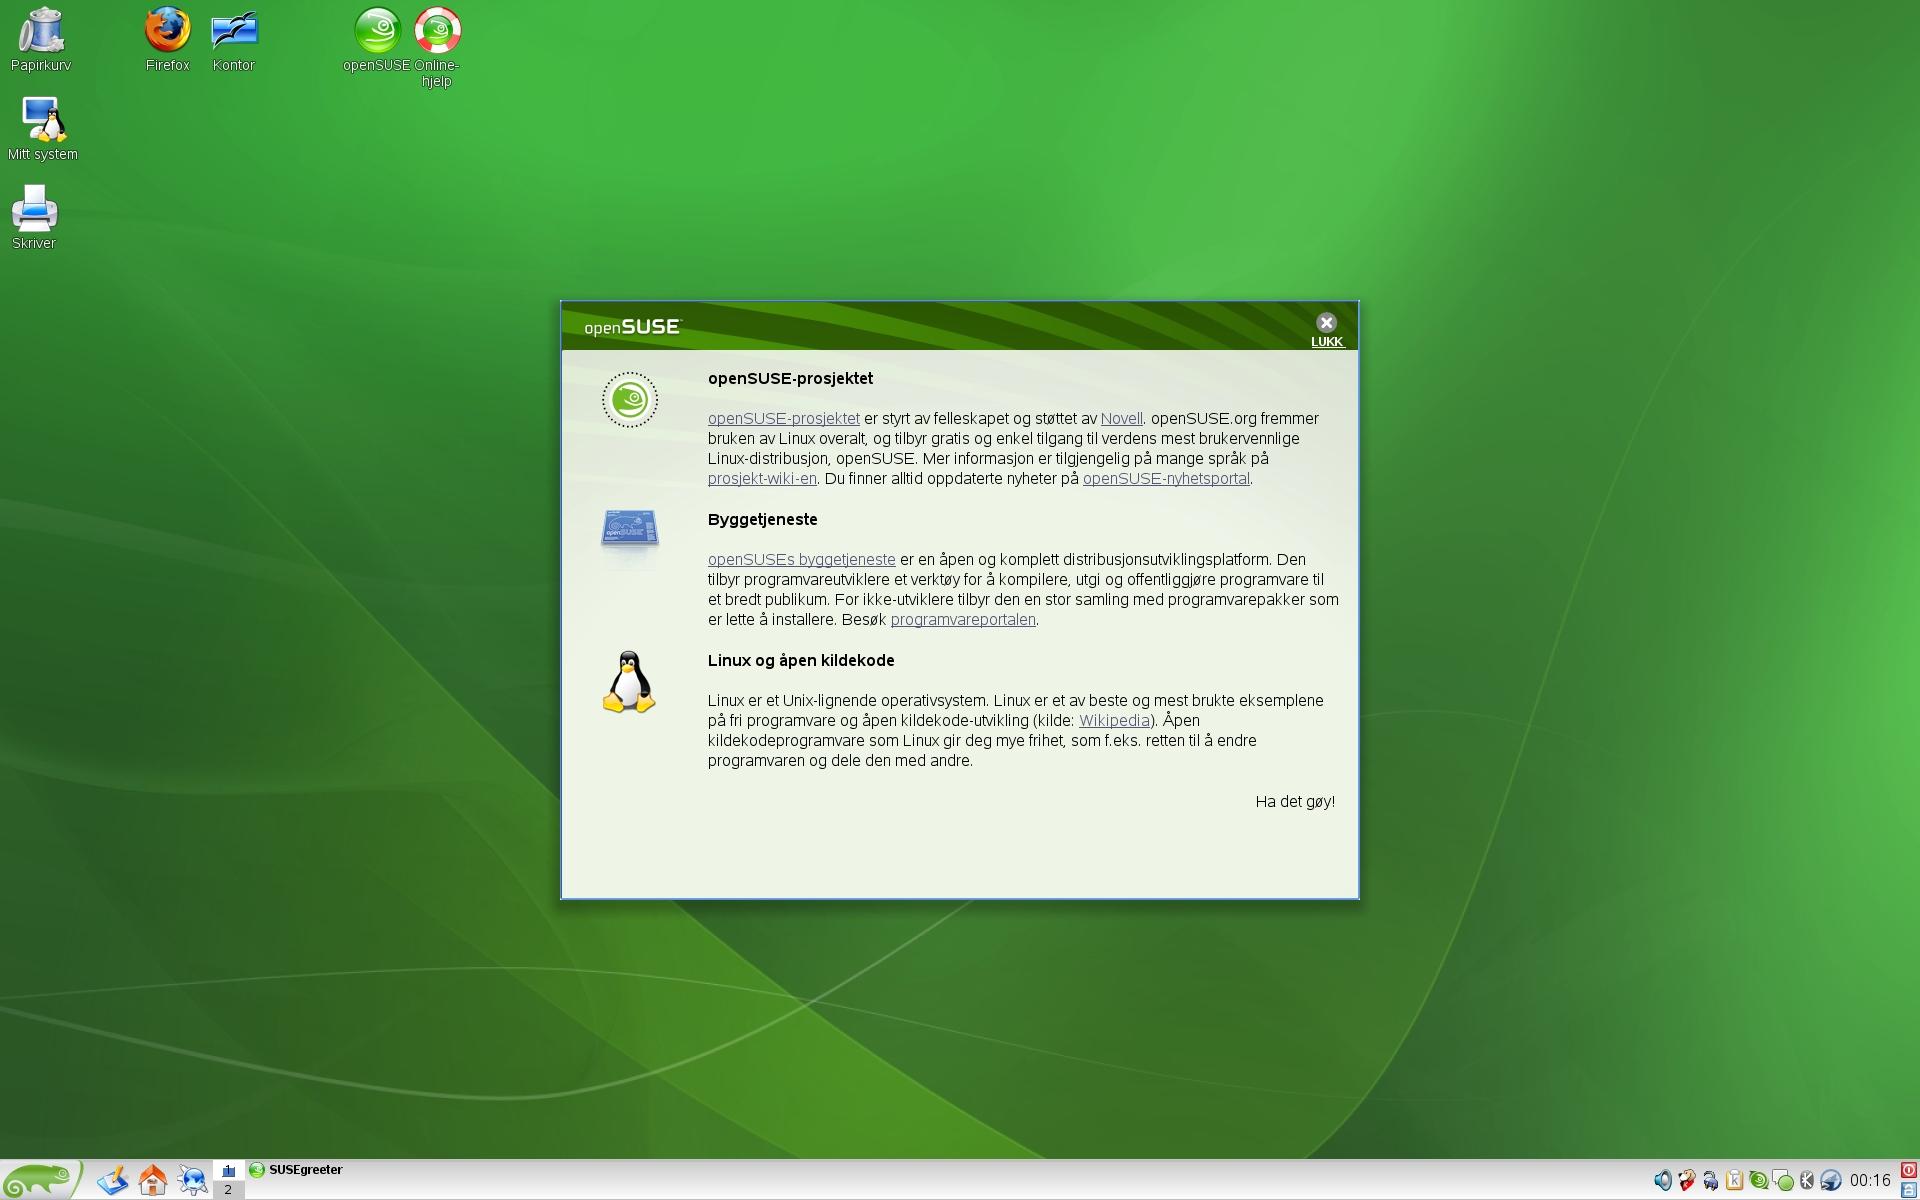 Velkommen til openSUSE
Klikk for større bilde